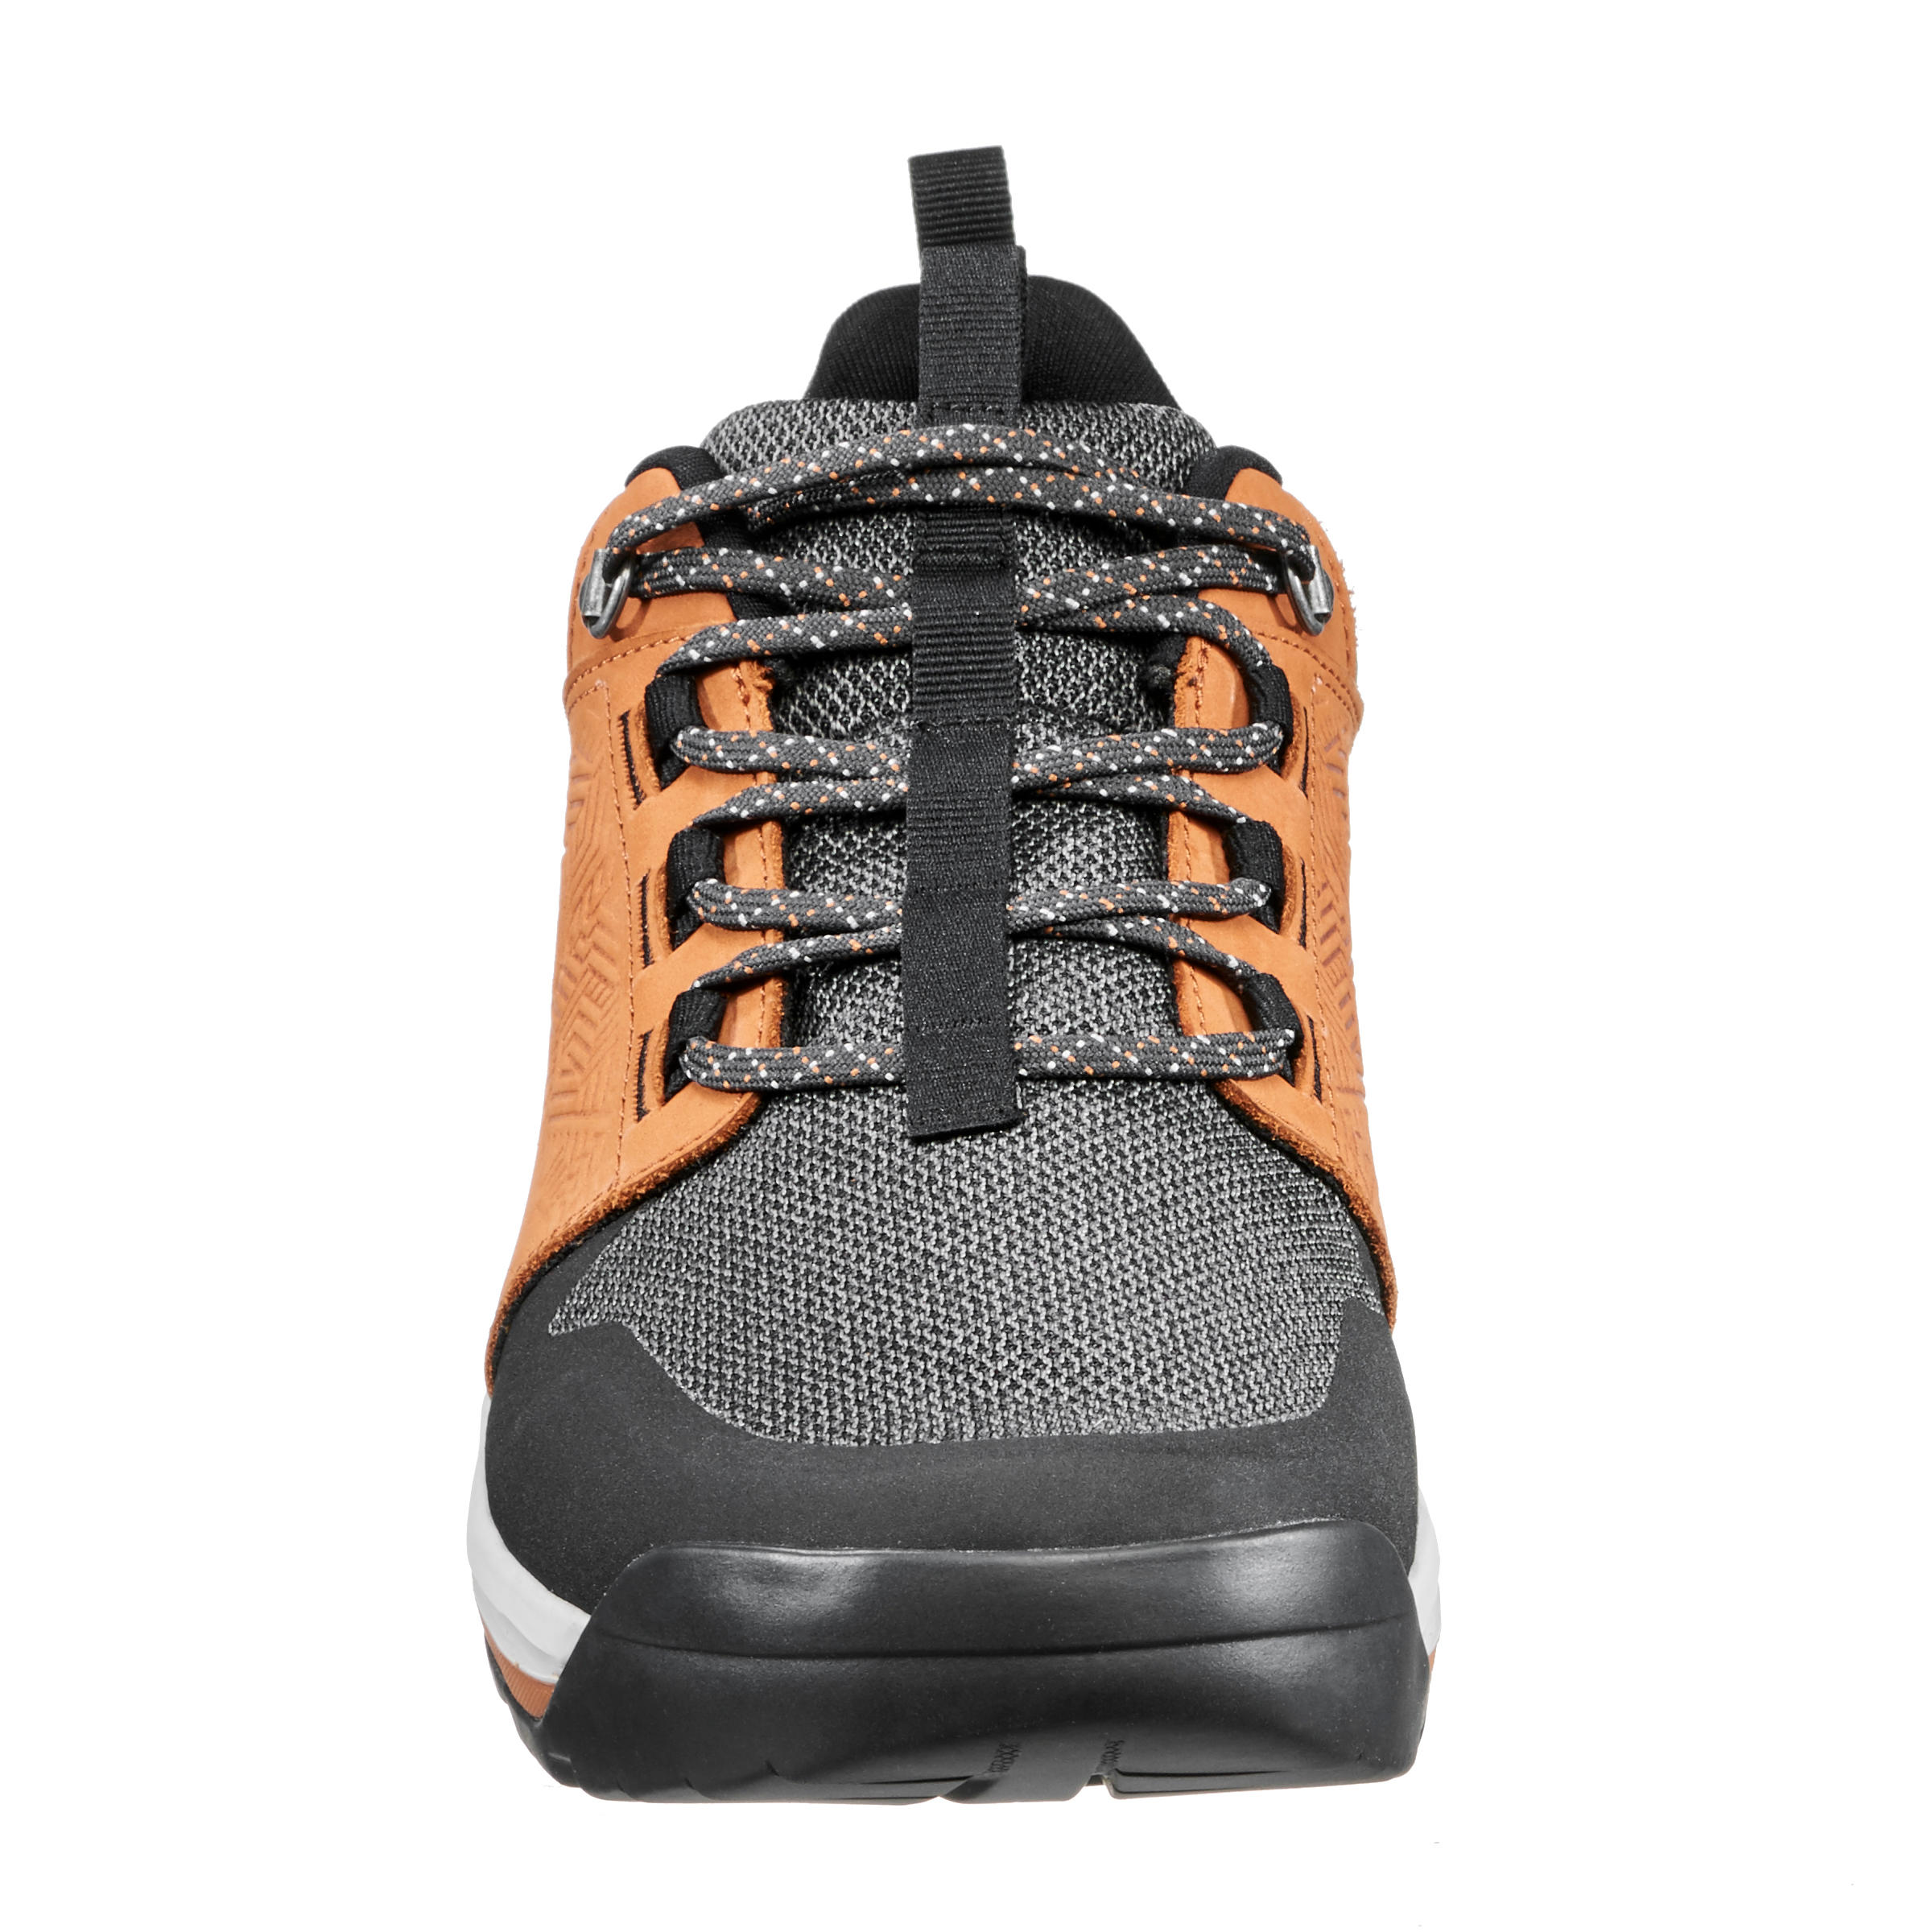 Chaussures de randonnée homme – NH 500  - QUECHUA